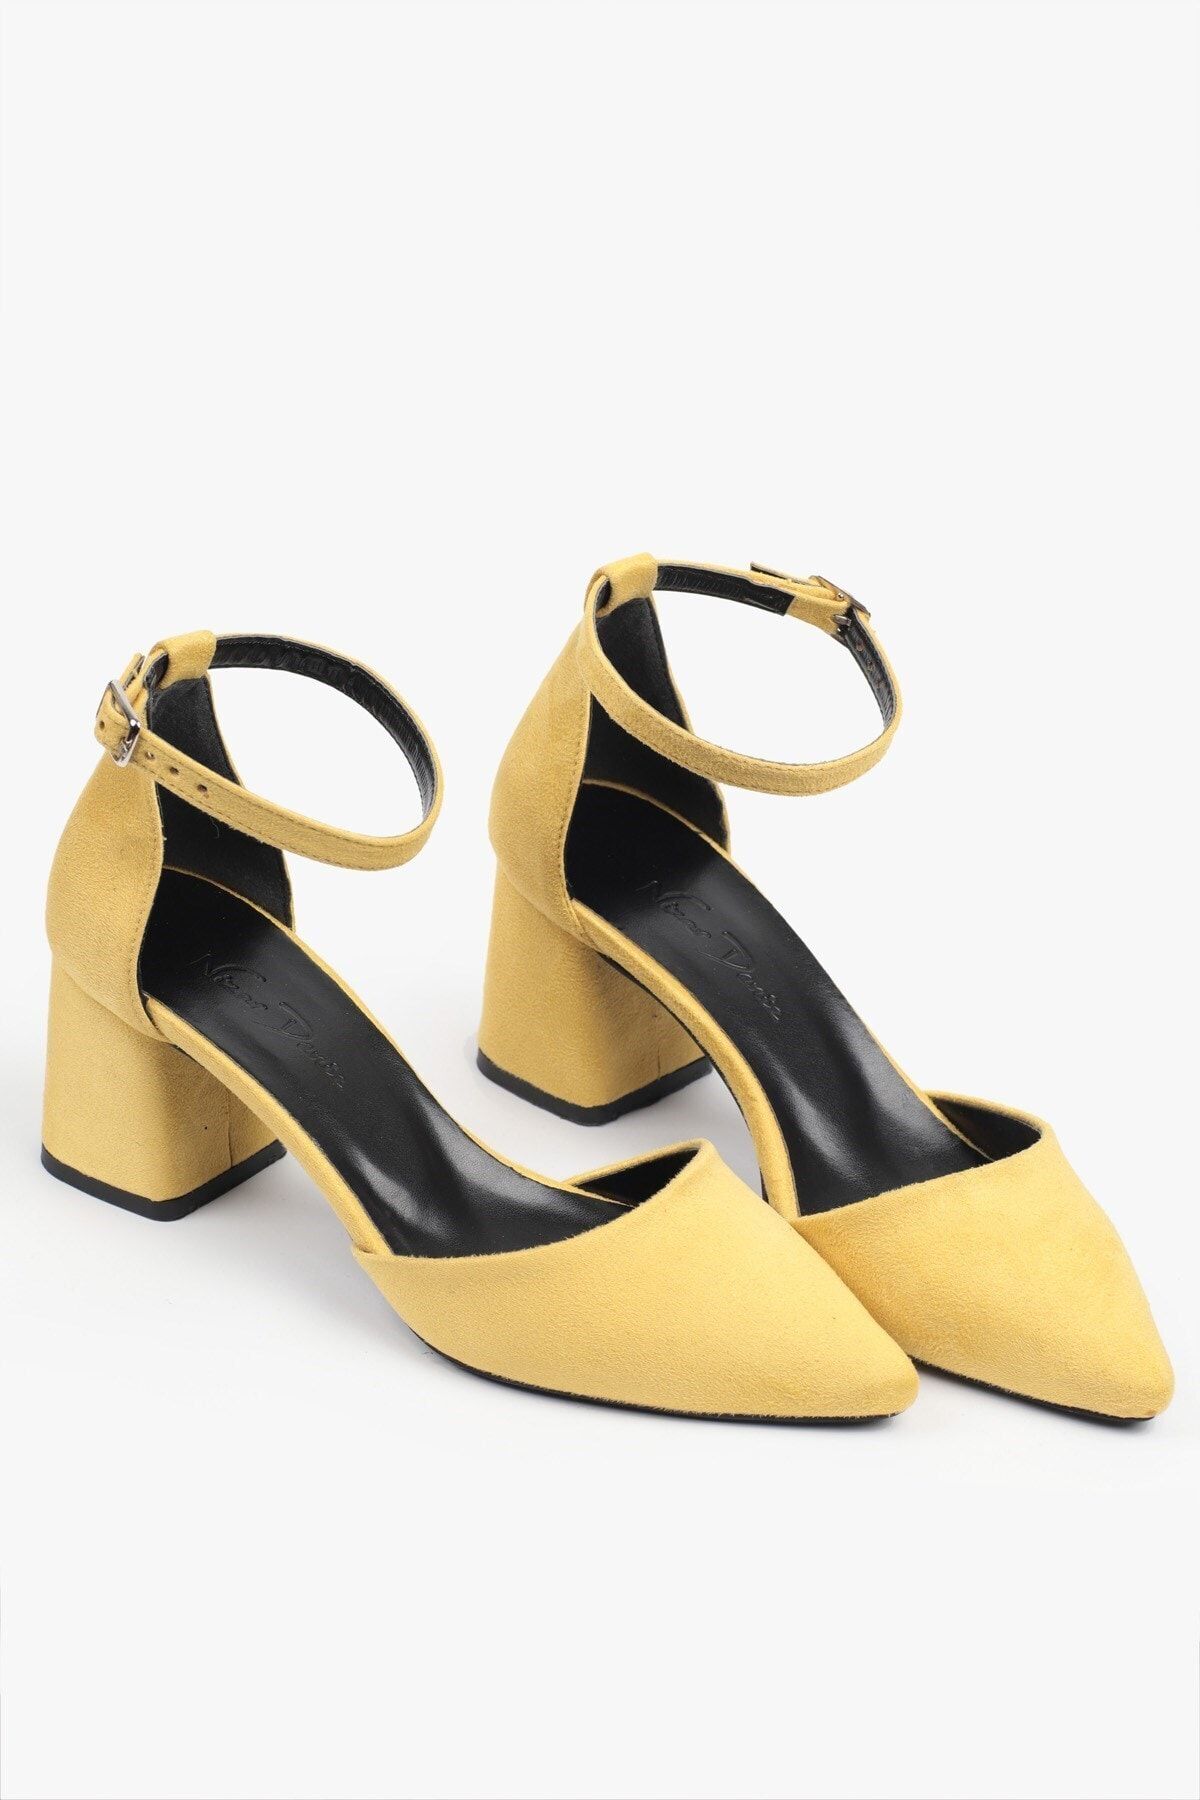 Nizar Deniz Amor Sarı Topuklu Ayakkabı